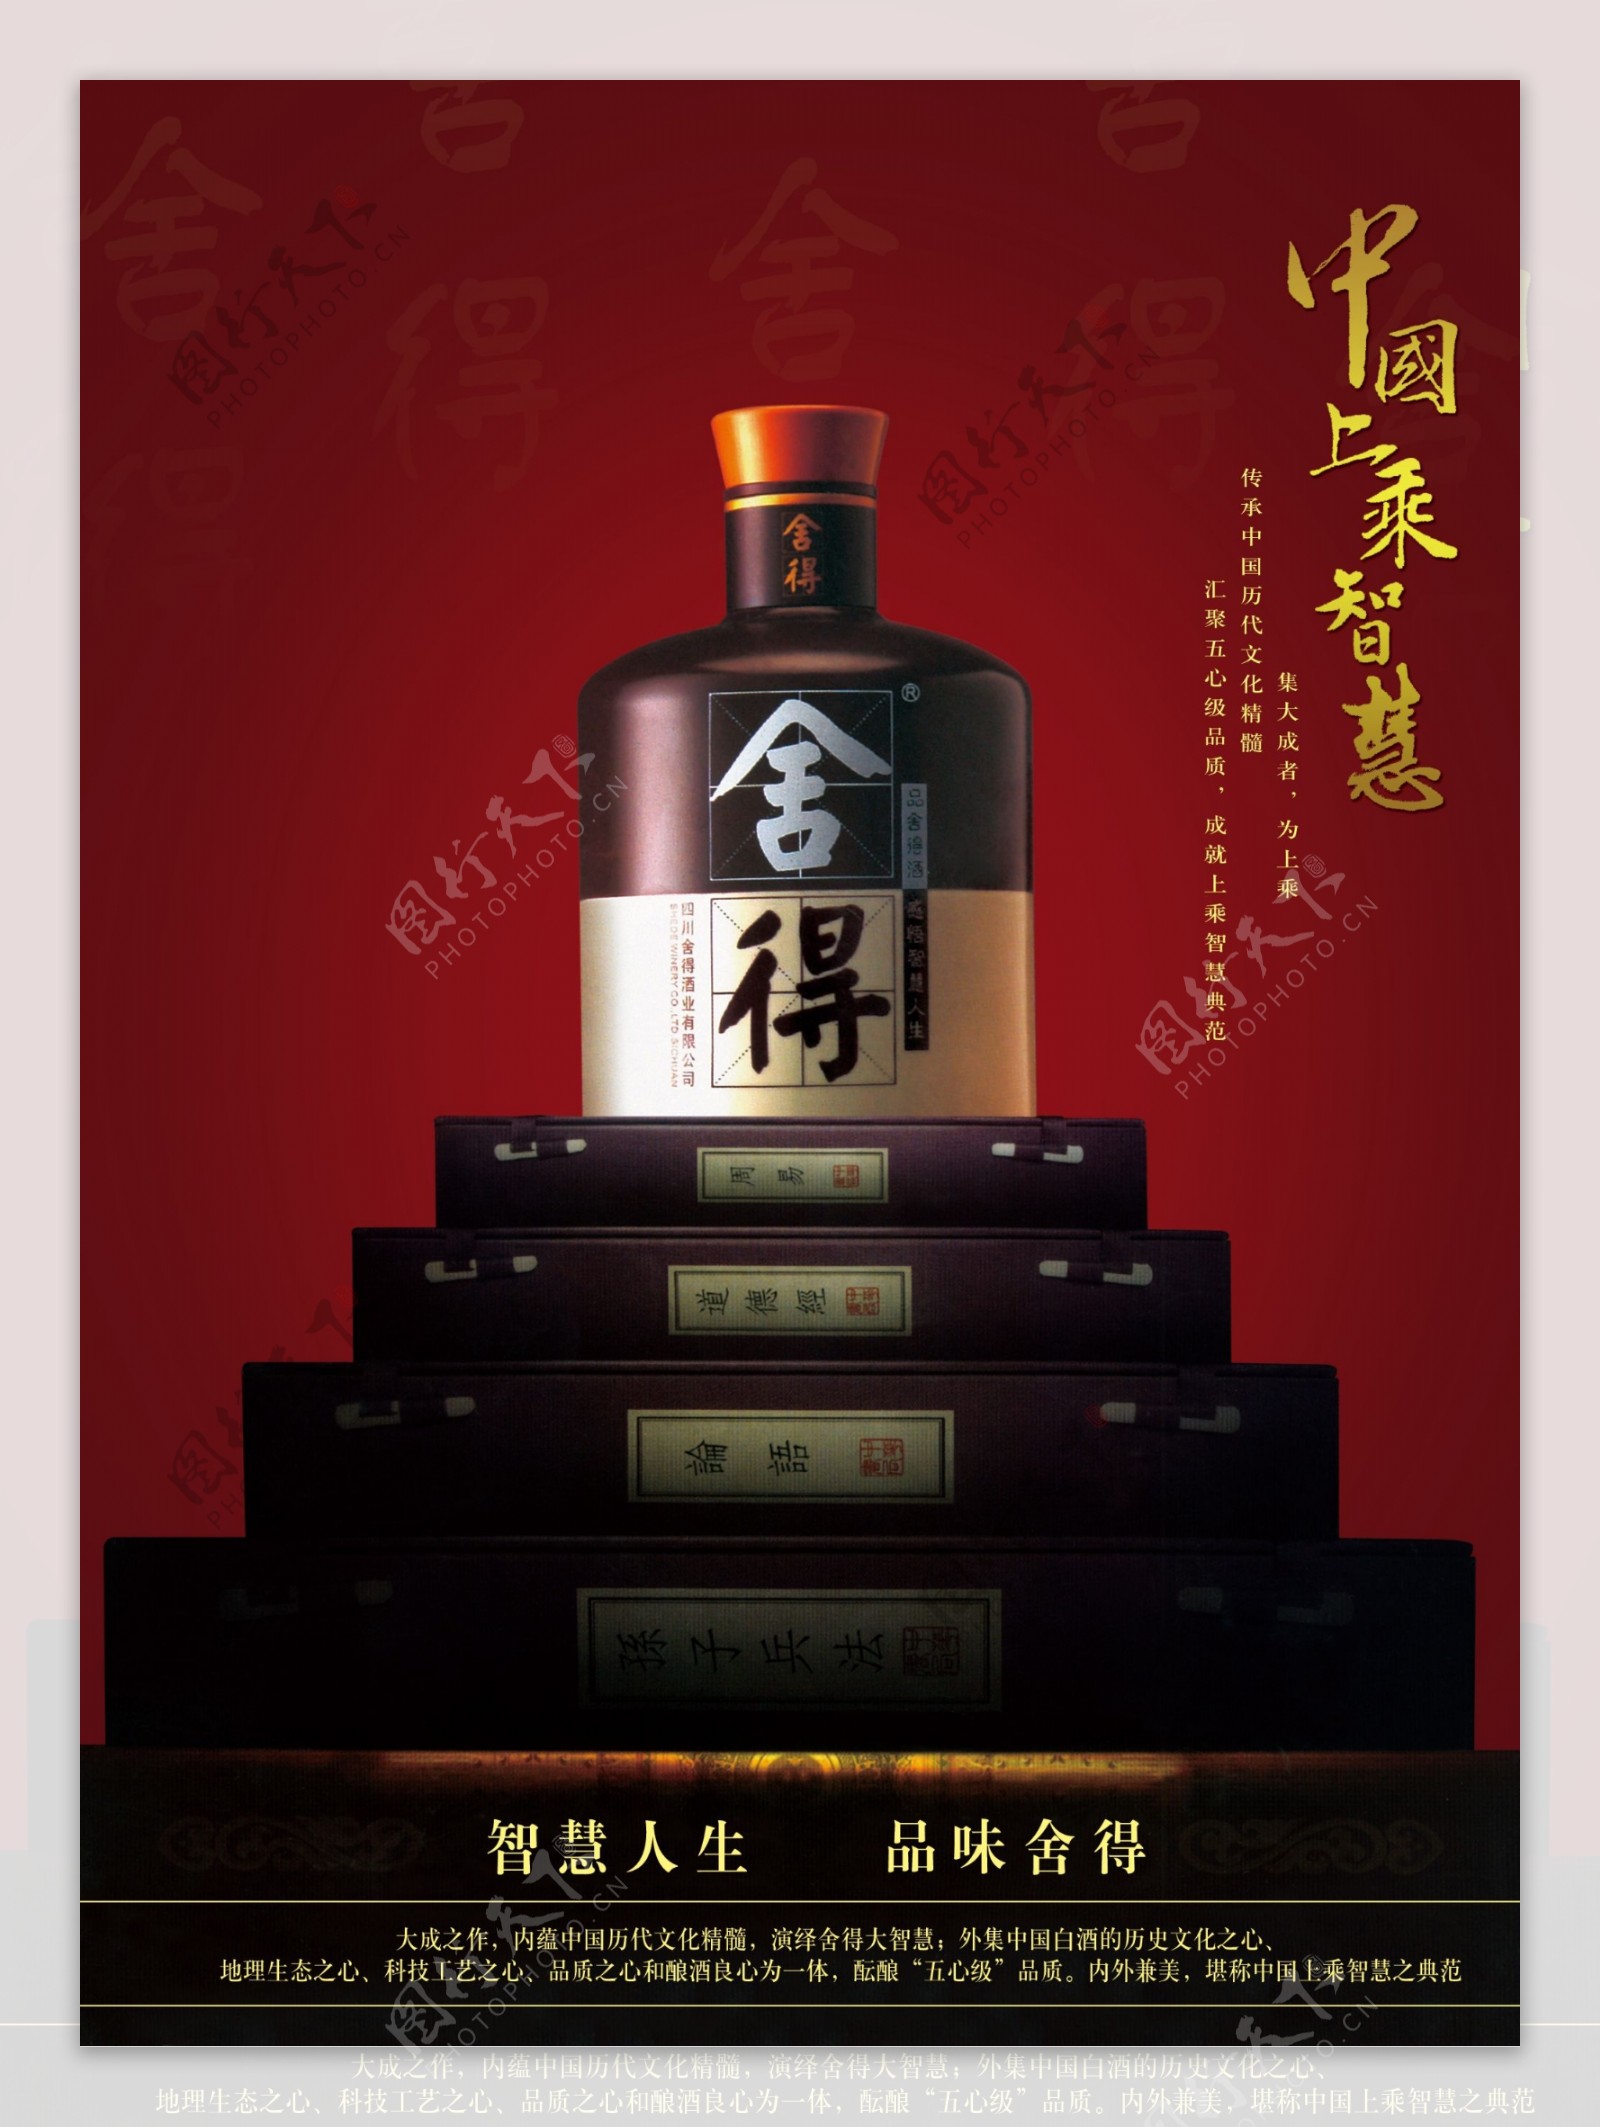 龙腾广告平面广告PSD分层素材源文件酒舍得中国上乘智慧